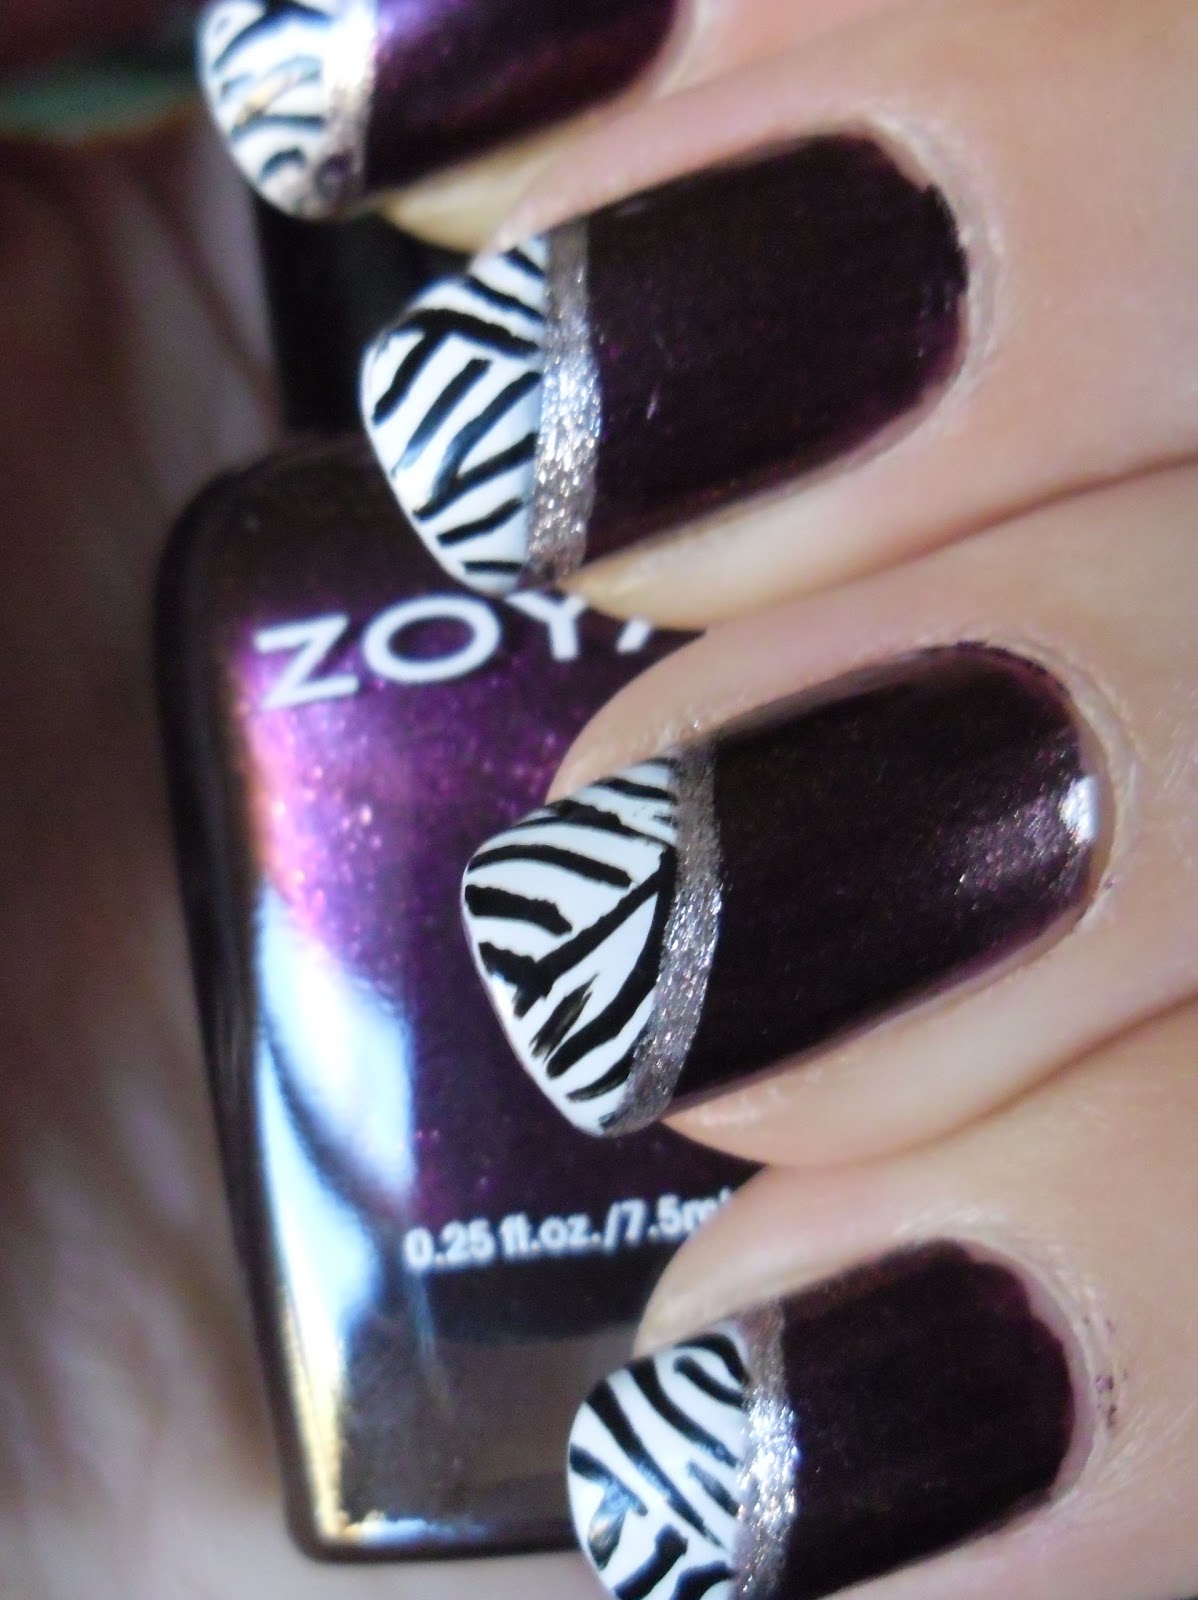 More Zebra..nails